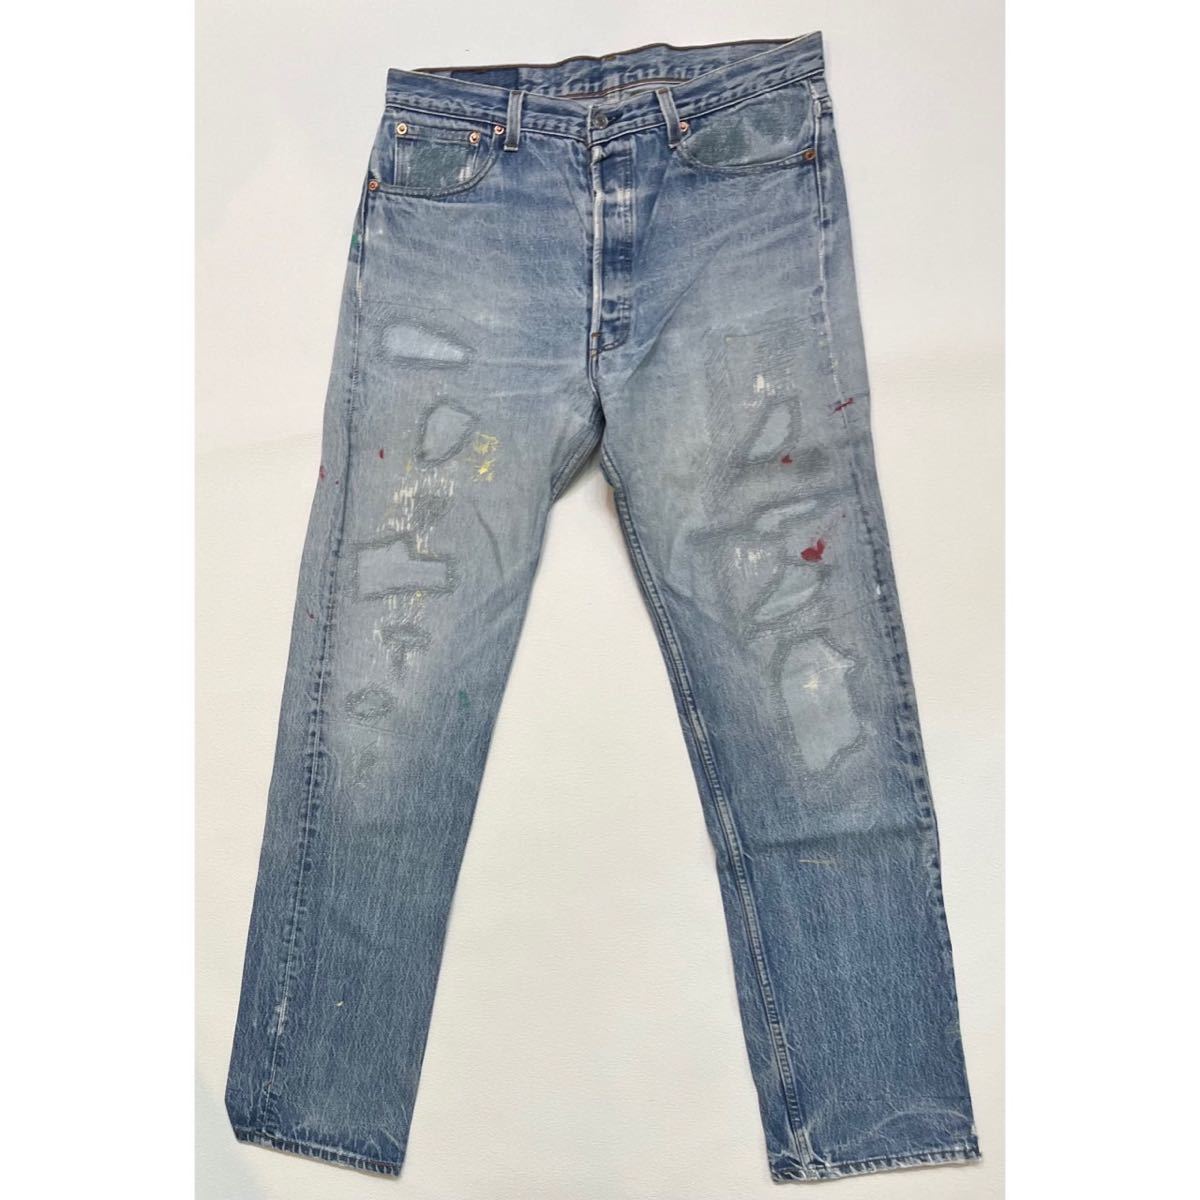 h107 90 年代 アメリカ 製 Levi's 501 xx デニム パンツ リーバイス W36 × L38 USA vintage ビンテージ denim pants